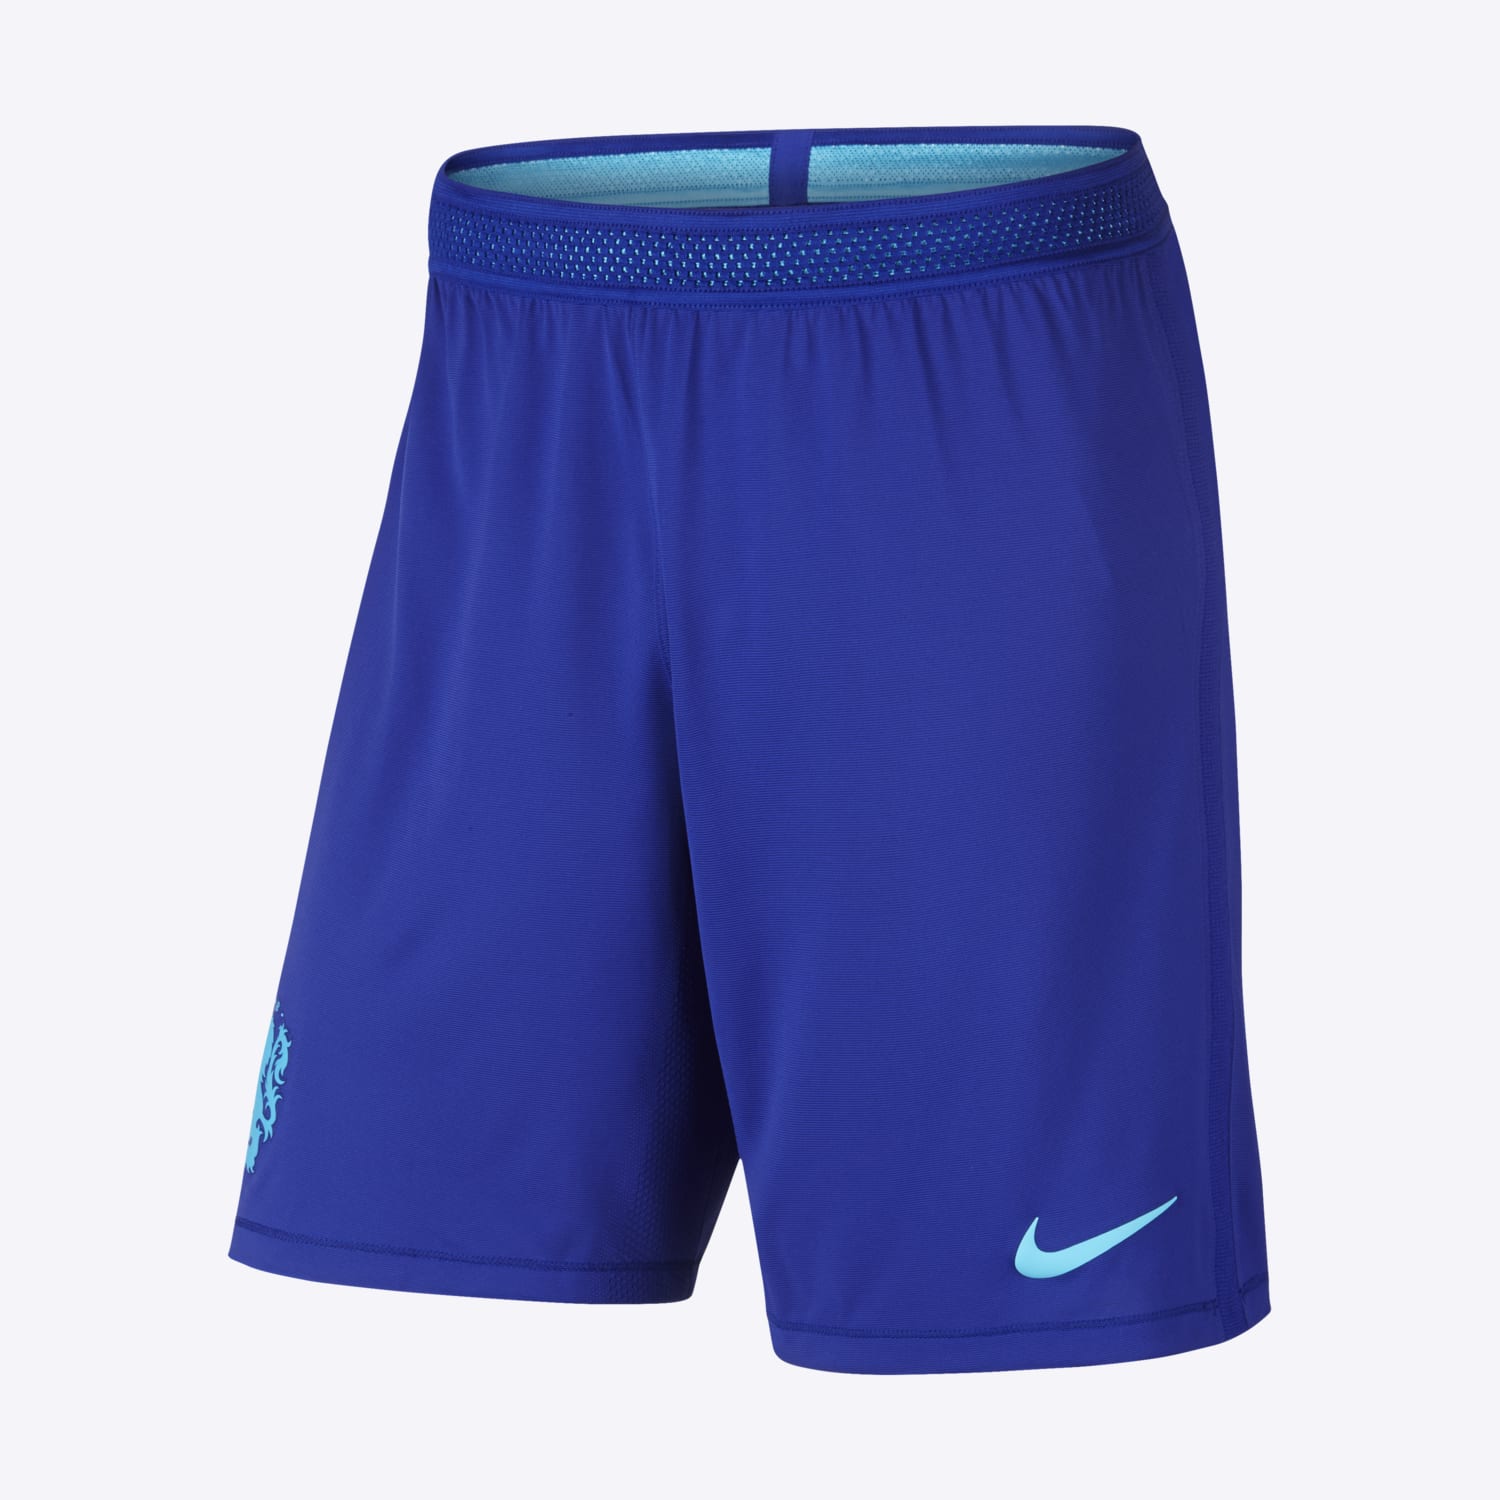 Nike Netherlands Vapor Match Home/Away - Men's Football Shorts